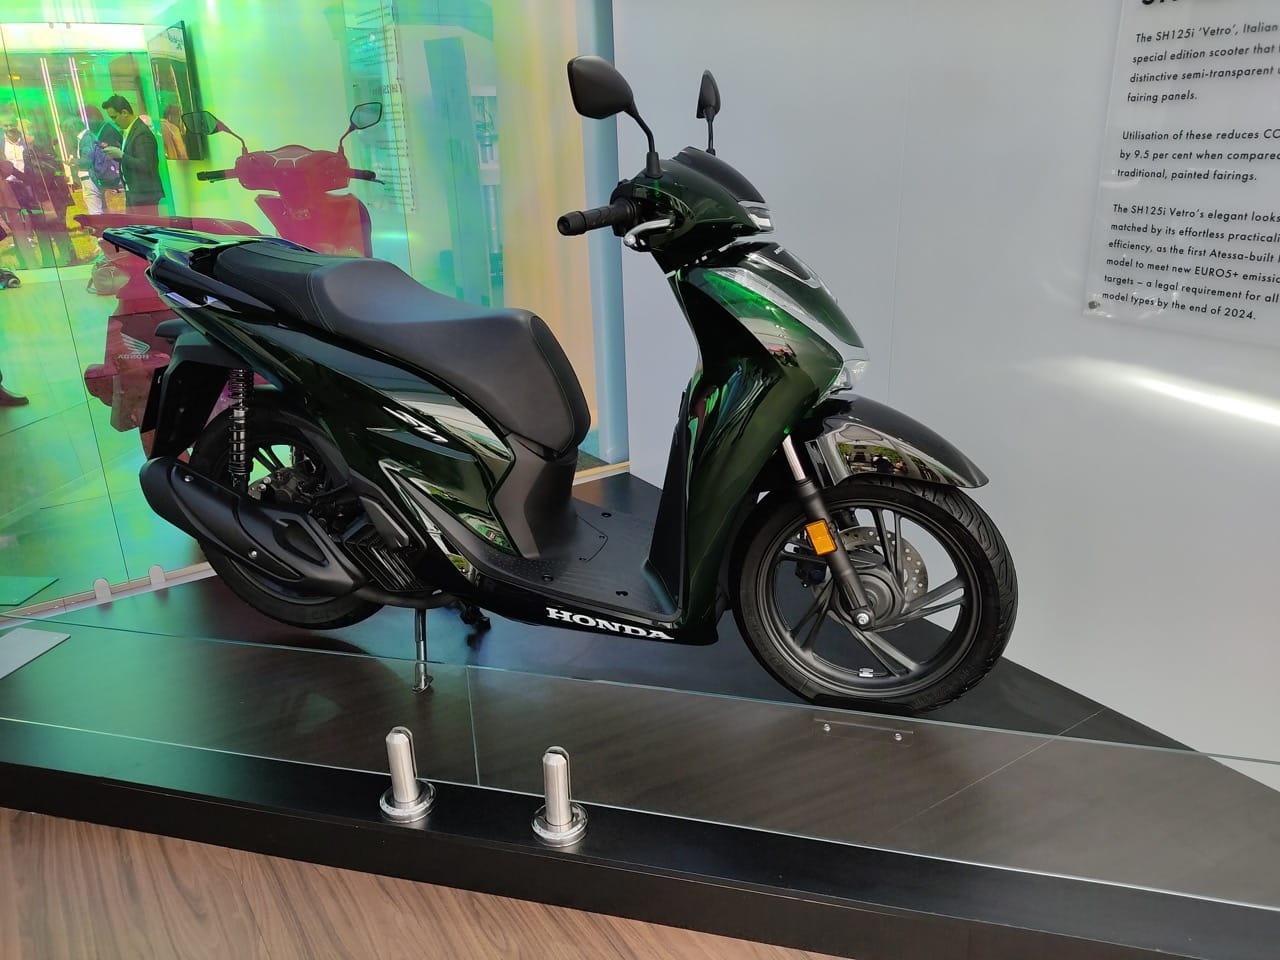 Honda SH125i Vetro: lo scooter sostenibile alla Design Week [FOTO]